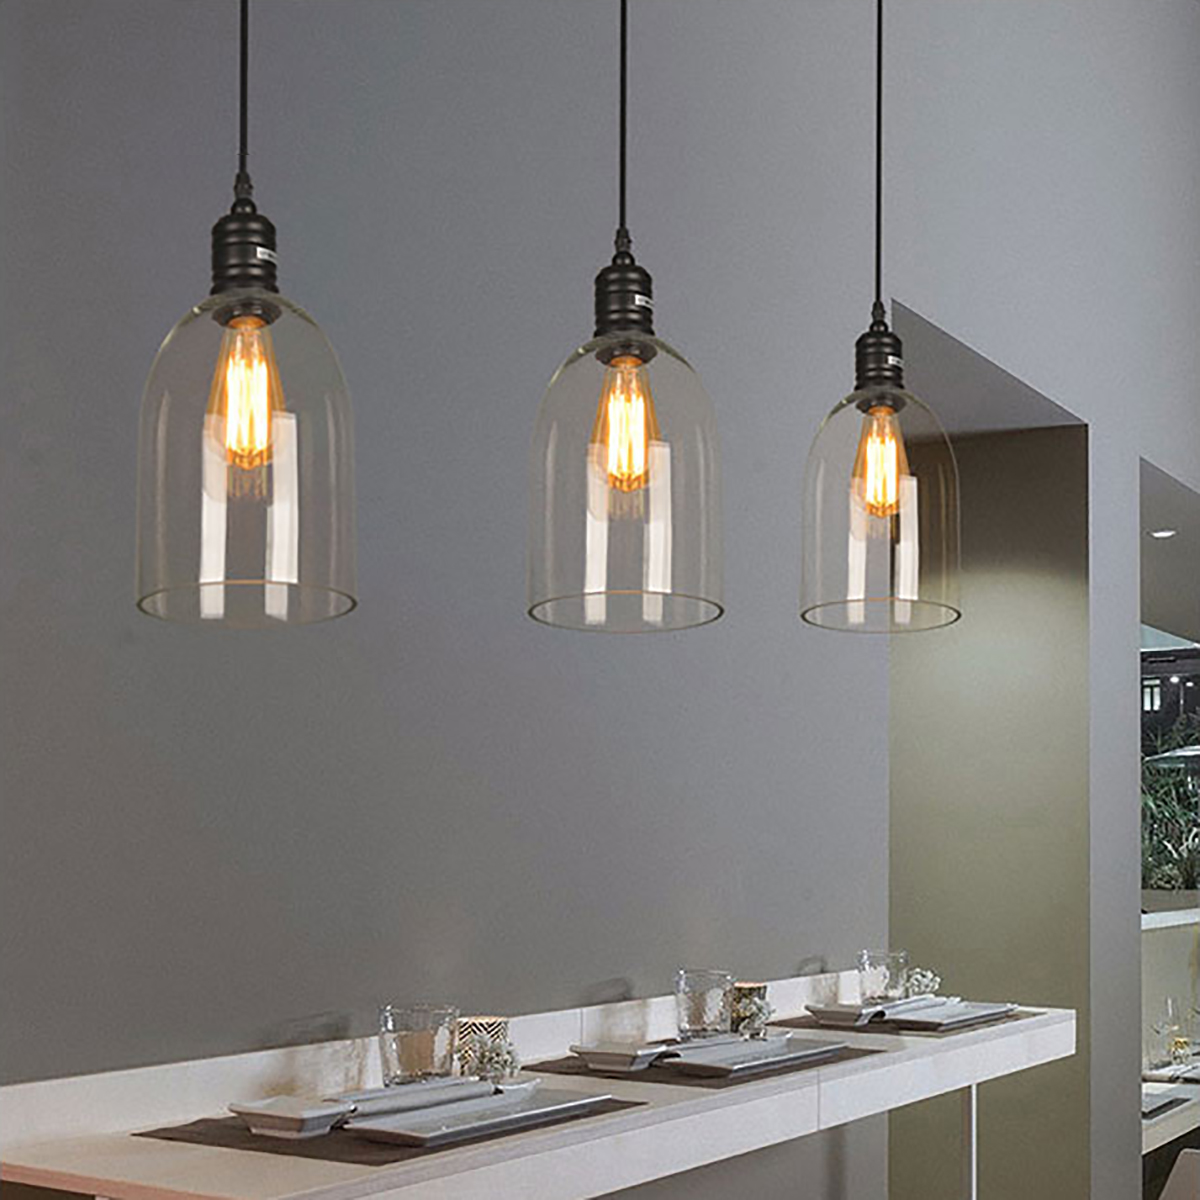 16x33cm-Modern-Ceiling-Light-LED-Pendant-Lamp-Glass-Dining-Room-Chandelier-Fixtures-for-E27-1694782-4